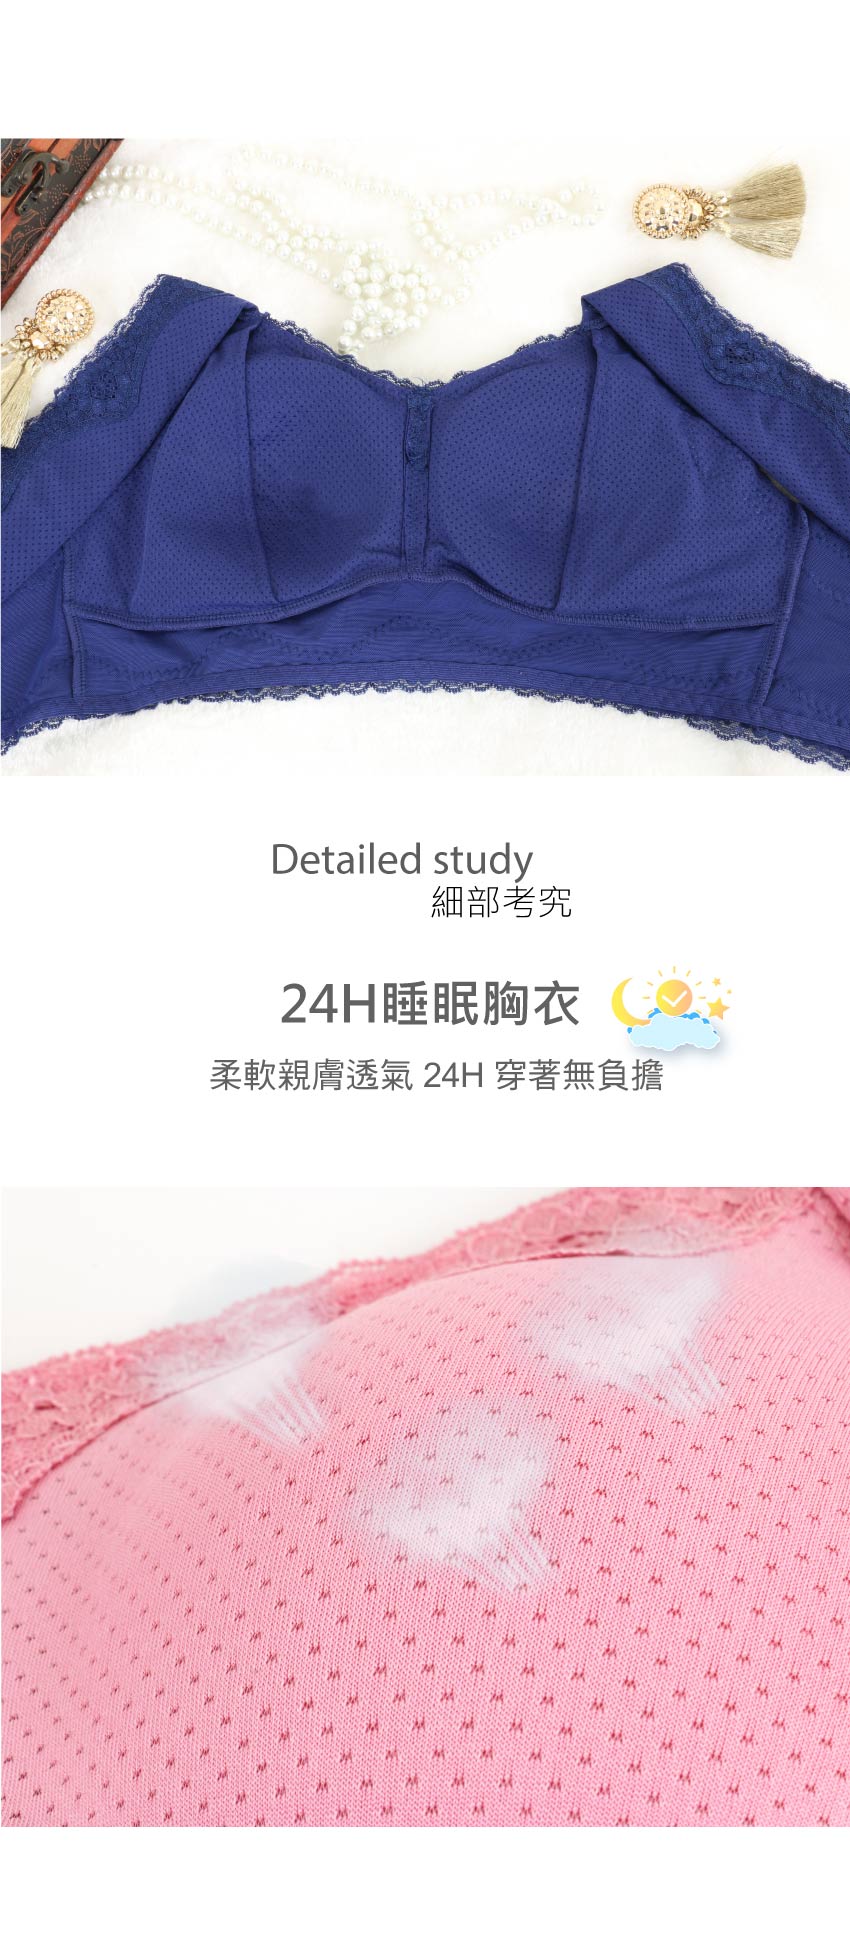 24H透氣睡眠胸衣(豆沙)